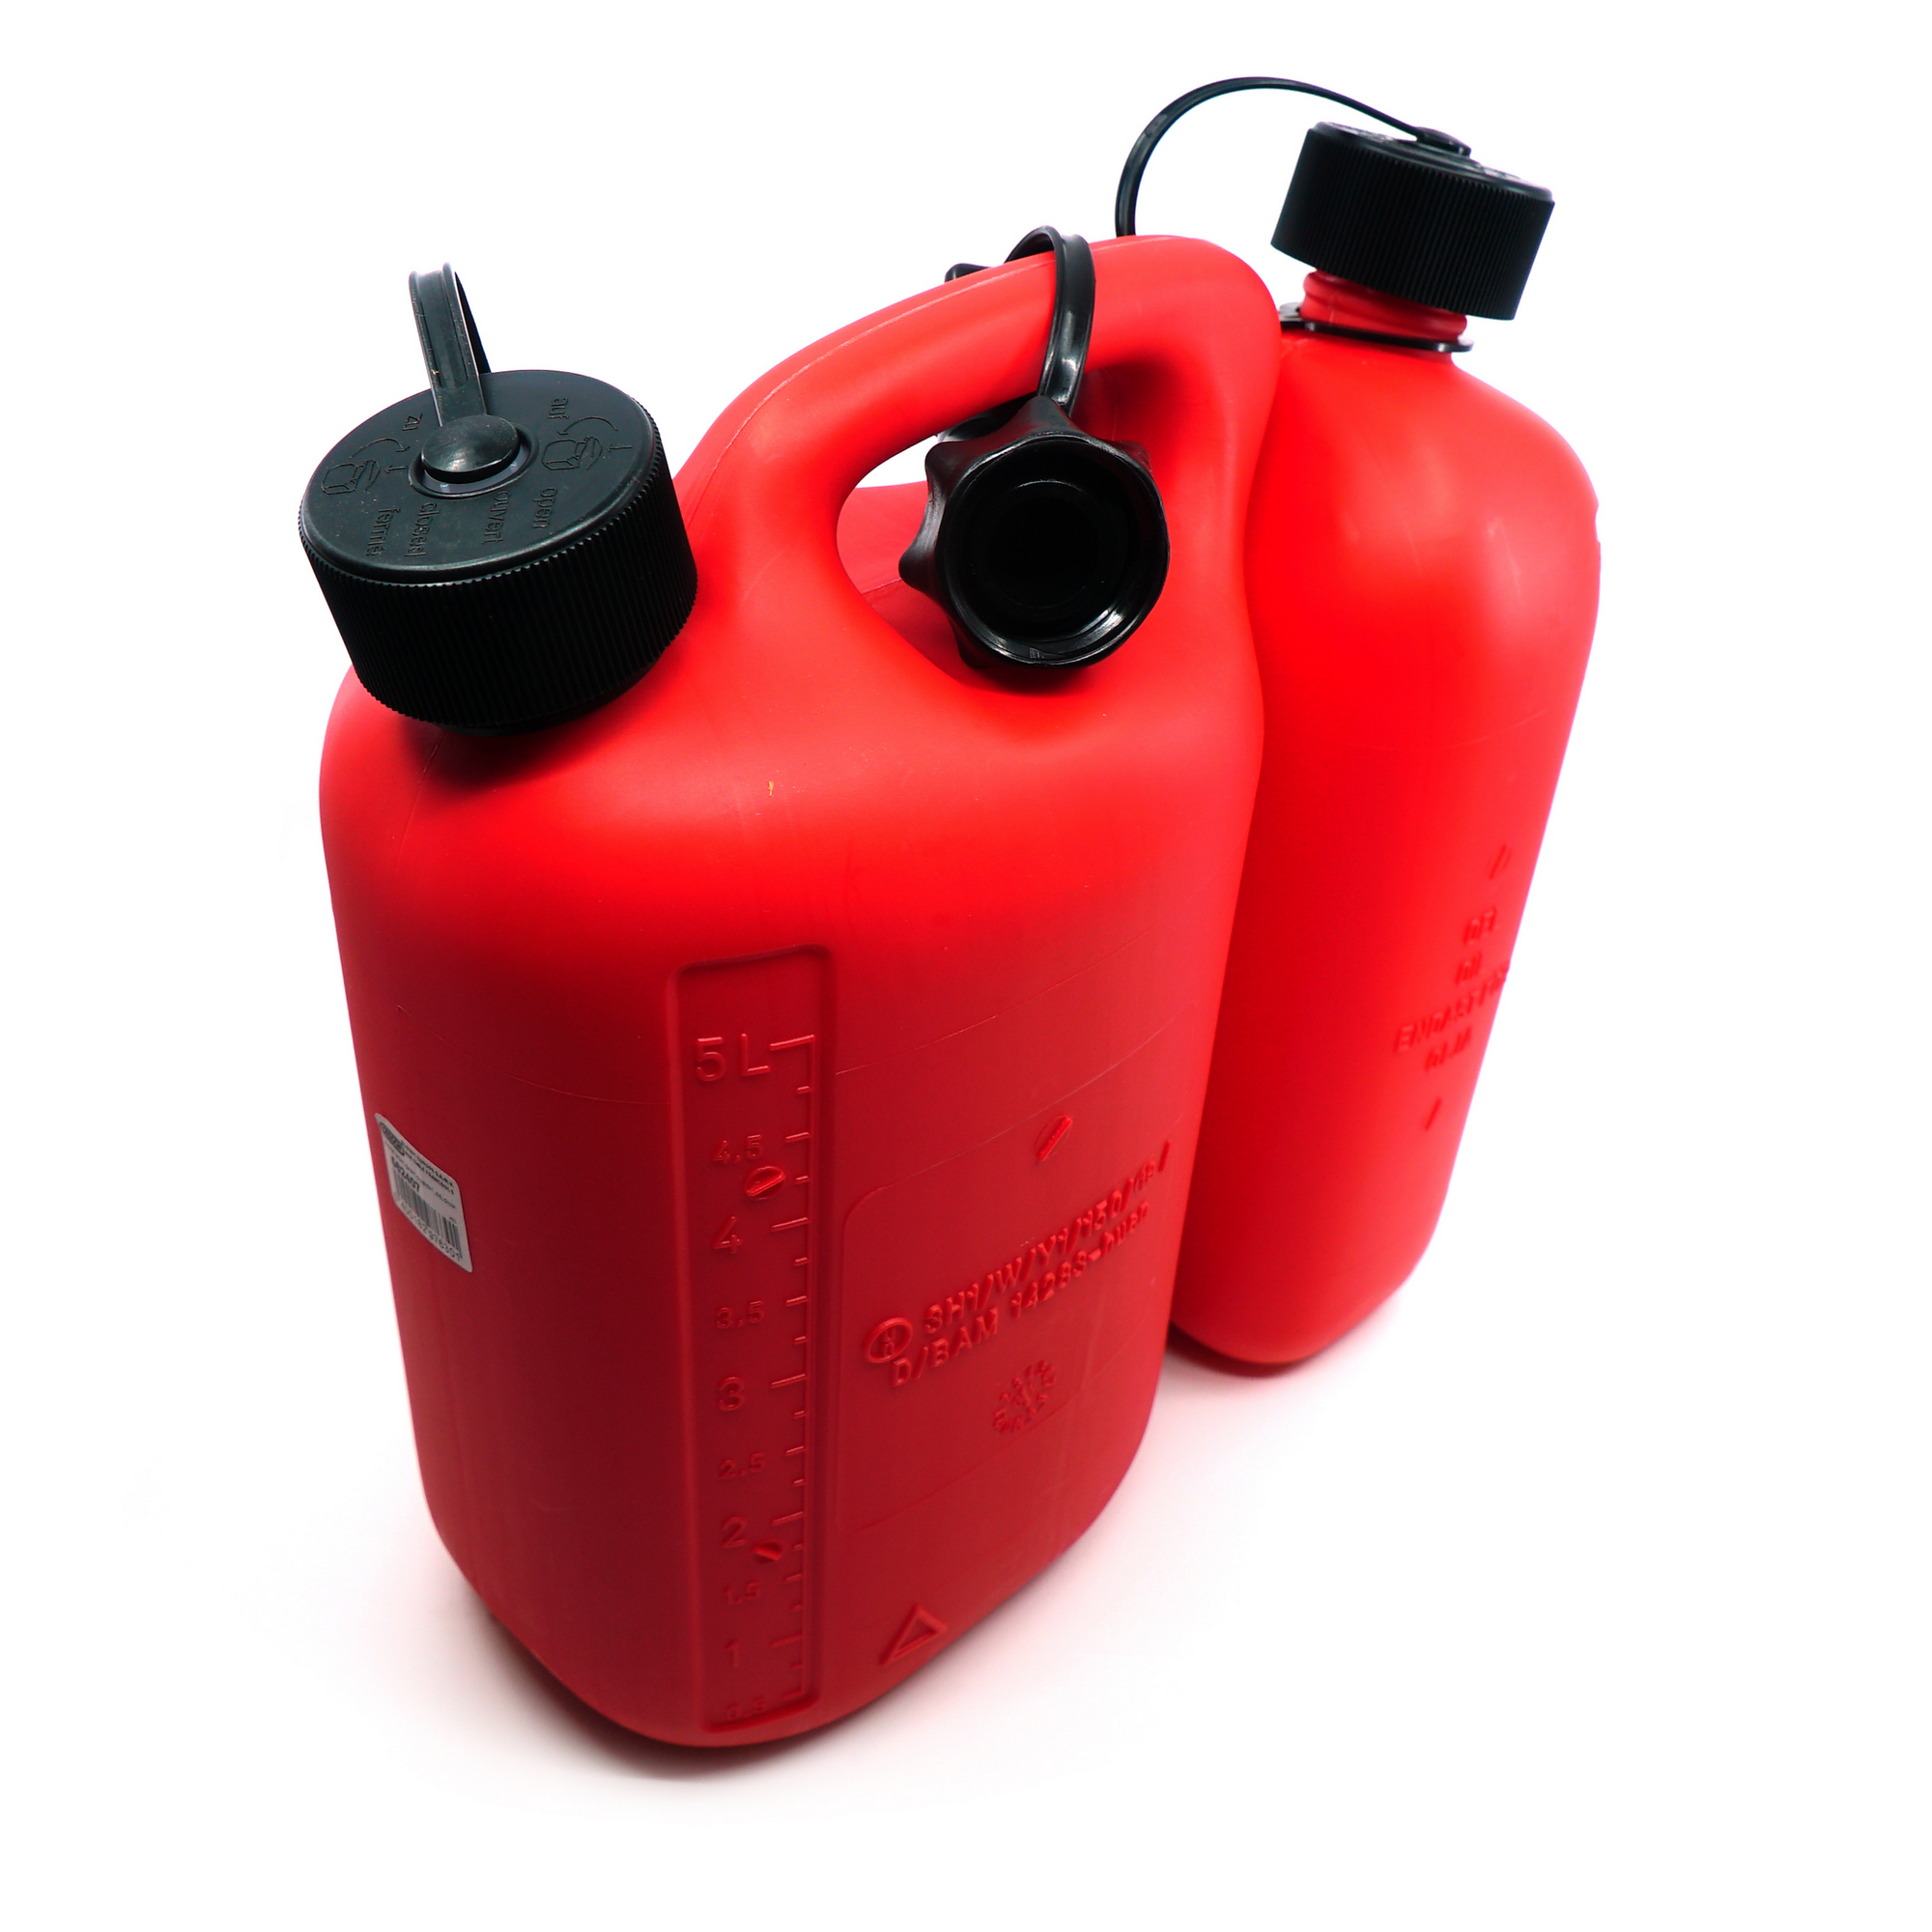 Lagerverkauf: Tecomec roter Doppelkanister, Kombi-Kanister 6+3 Liter für  Benzin und Öl, zum betanken von Motorgeräten jetzt günstig kaufen